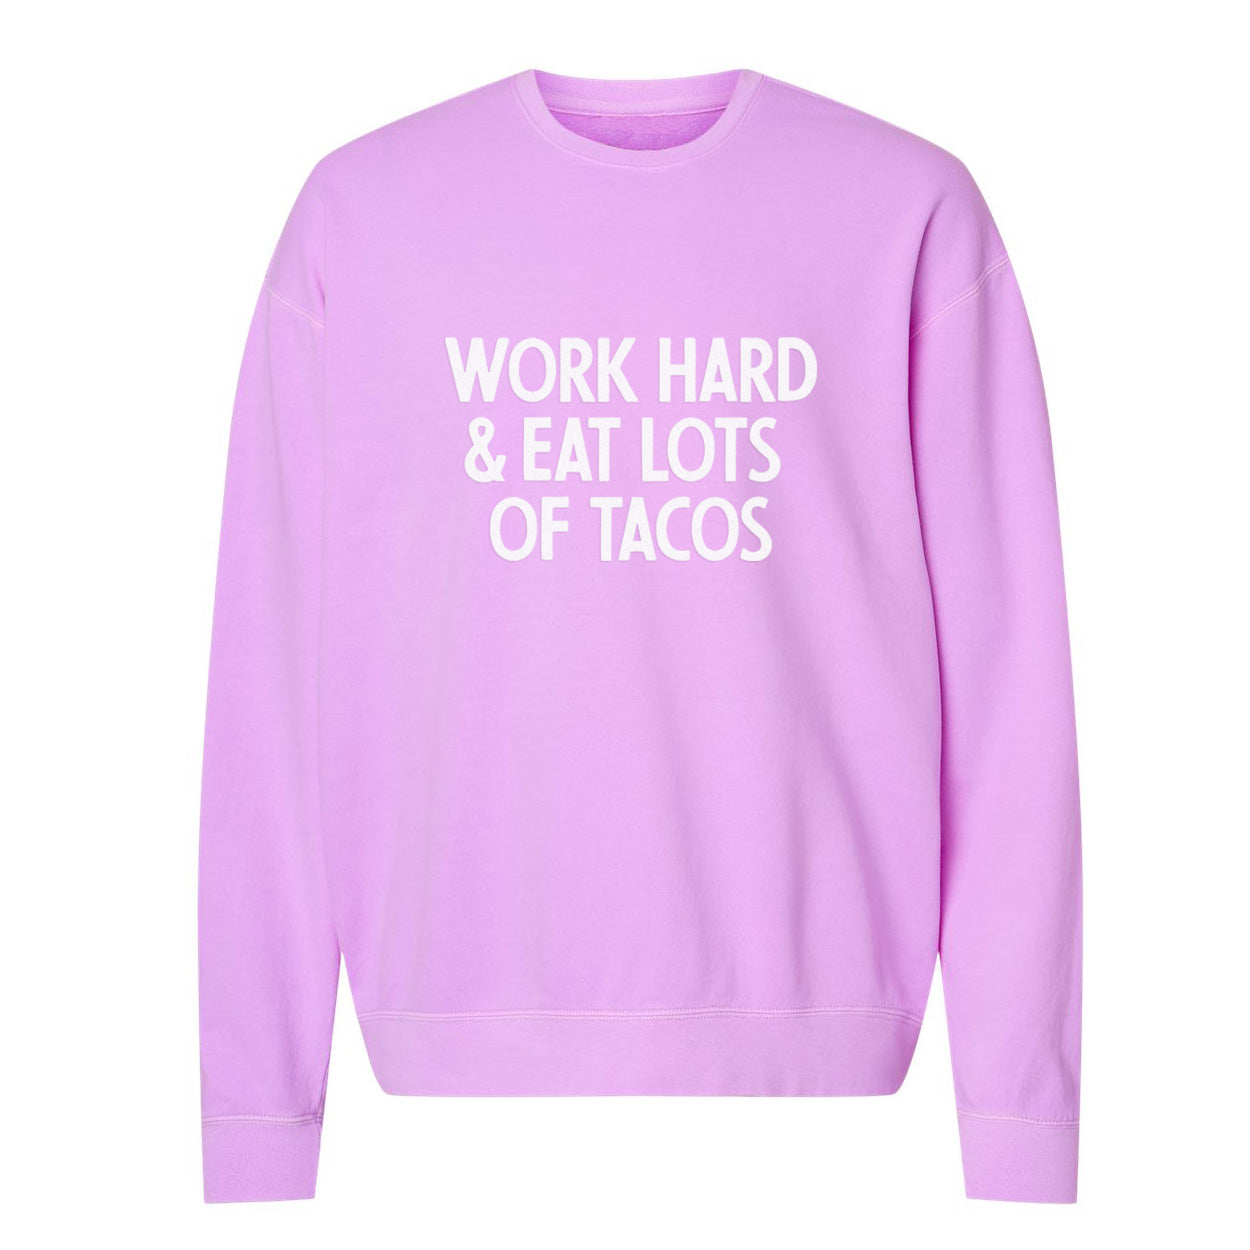 Work Hard & Eat Lots Of Tacos Washed Sweatshirt